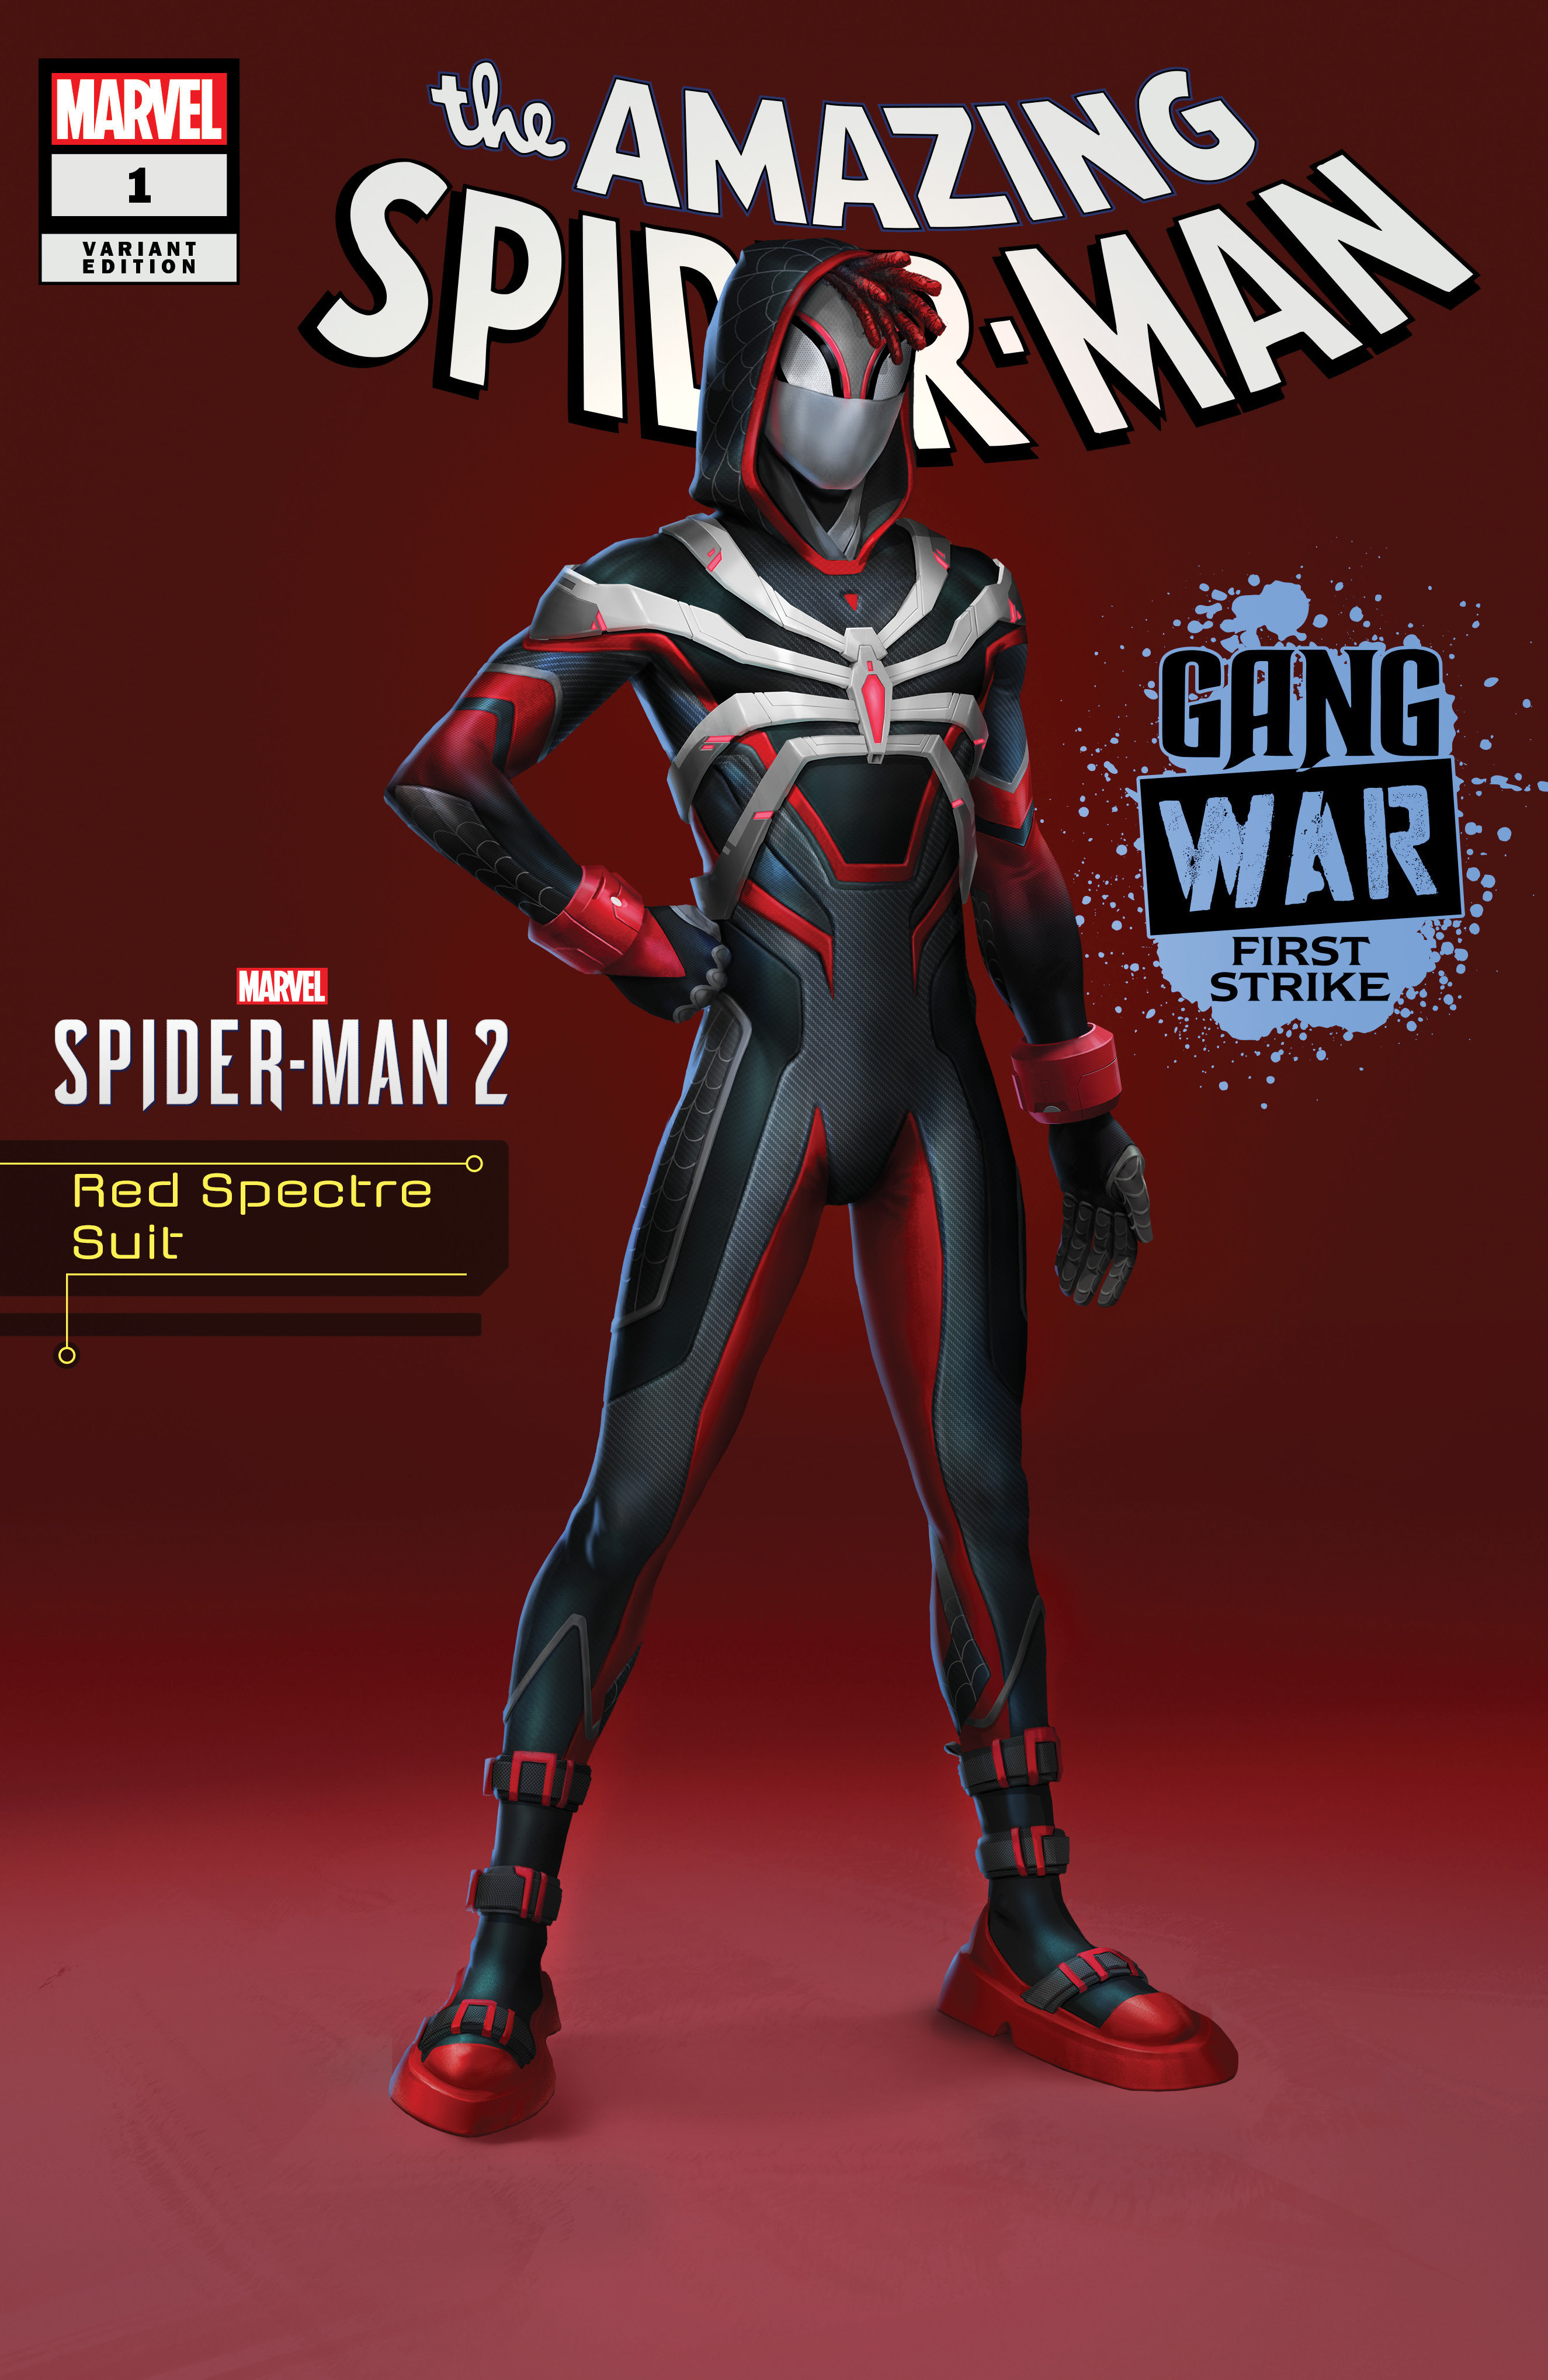 Amazing Spider-Man Gang War First Strike #1 Spider-Man 2 Variant